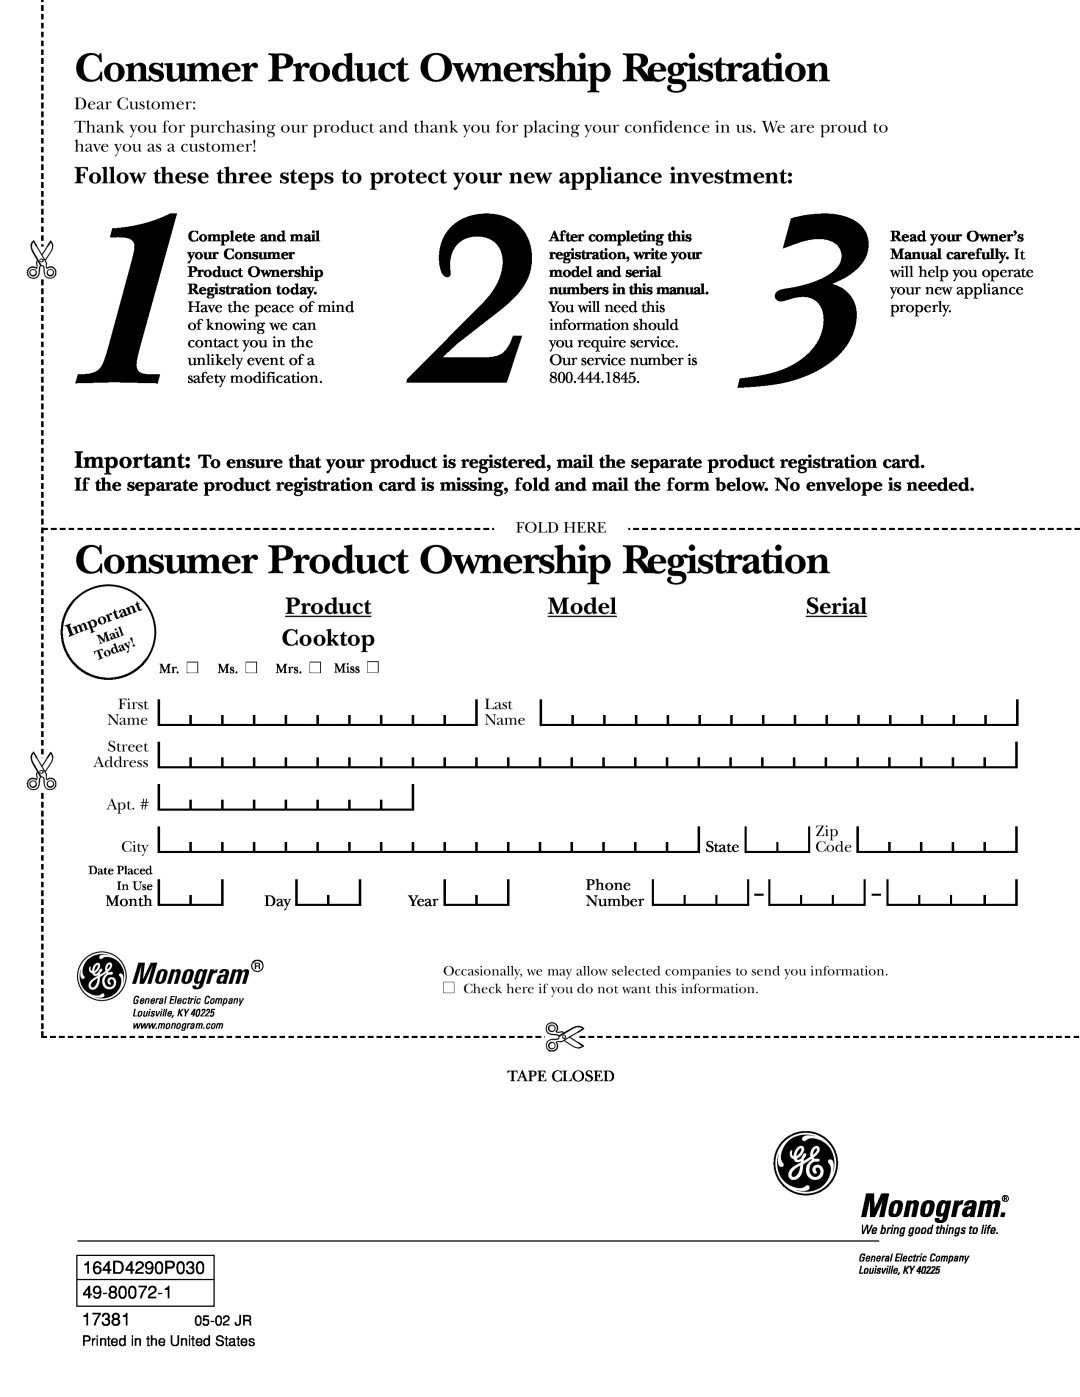 GE 36 owner manual Consumer Product Ownership Registration, Model, Cooktop, Monogram, Serial 